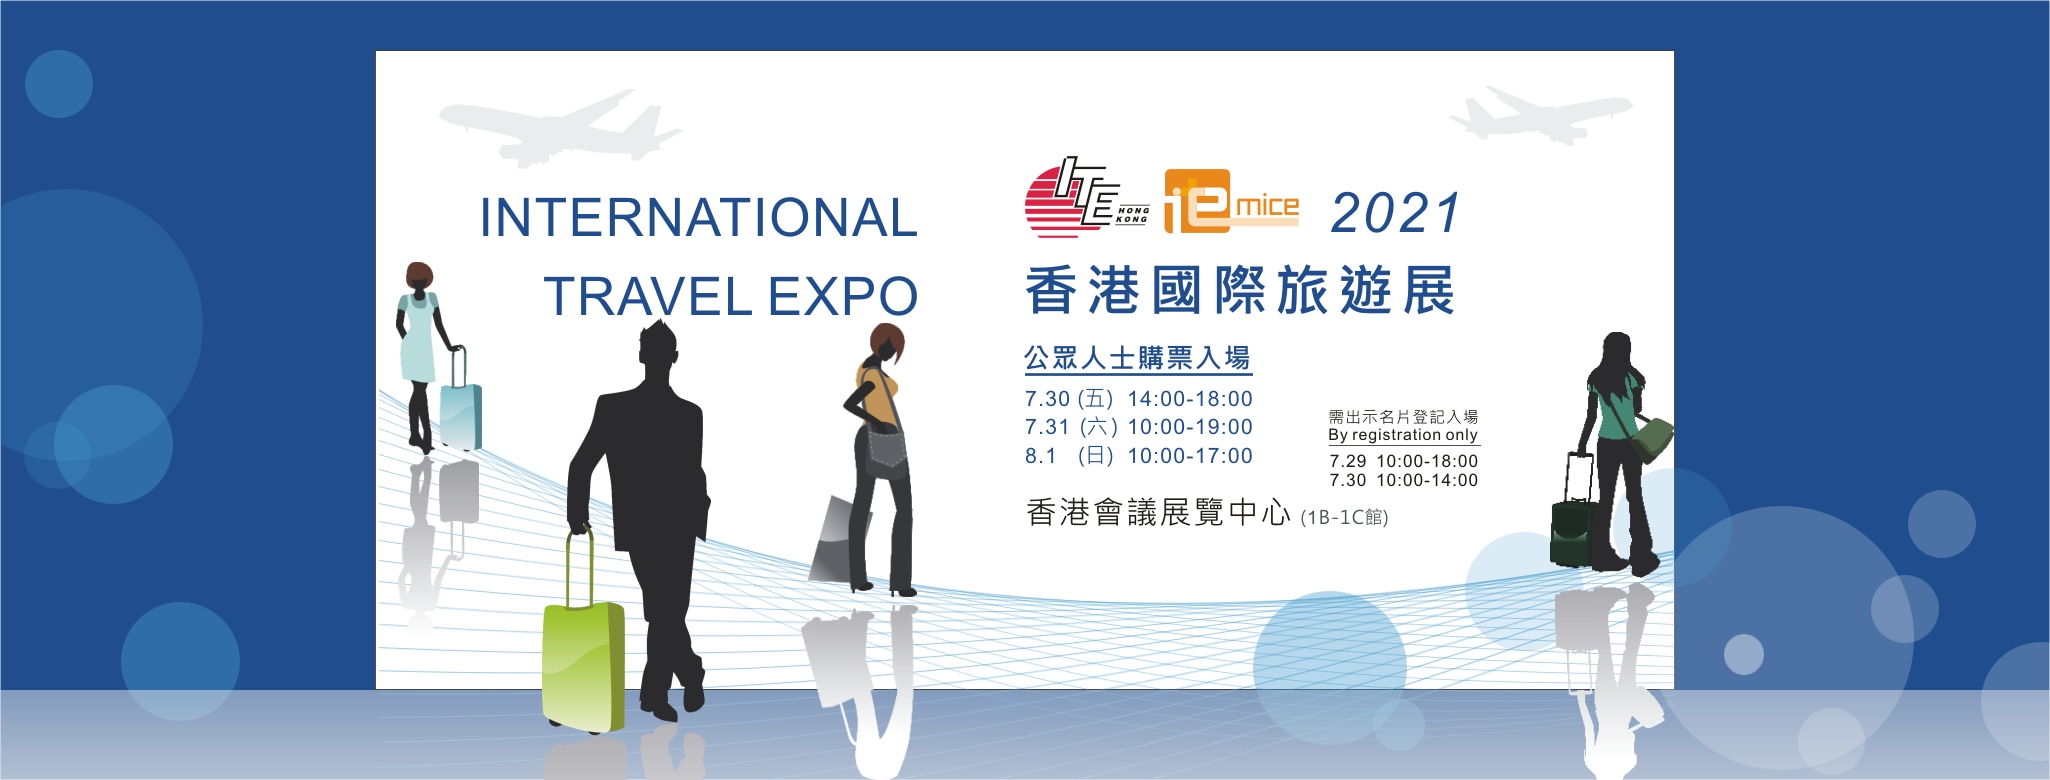 travel expo hk